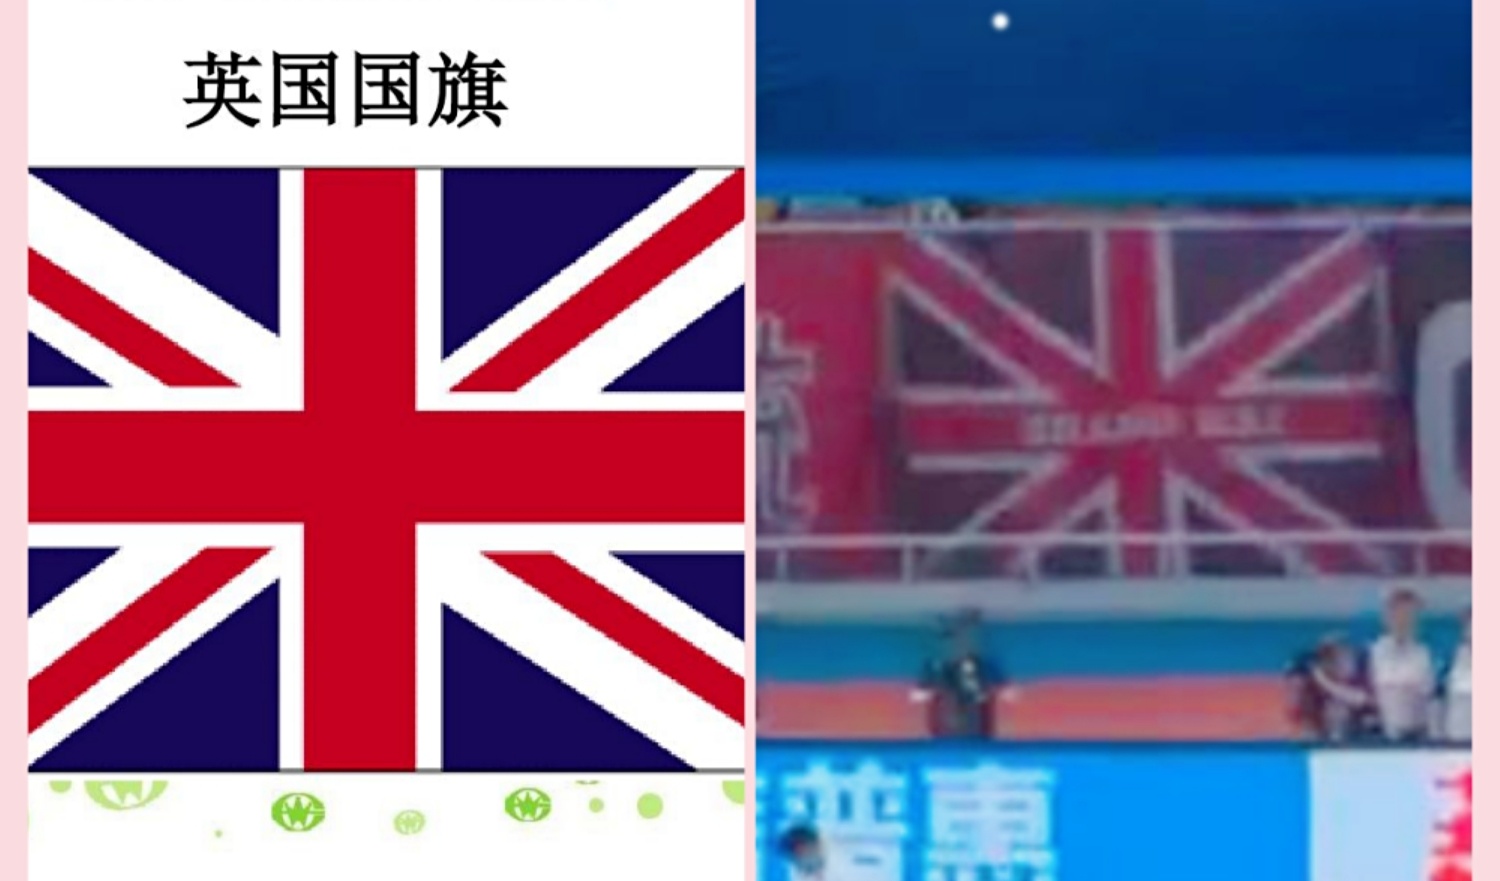 所以这个事情就破案了,这只是一面和英国国旗图案很像的横幅而已.